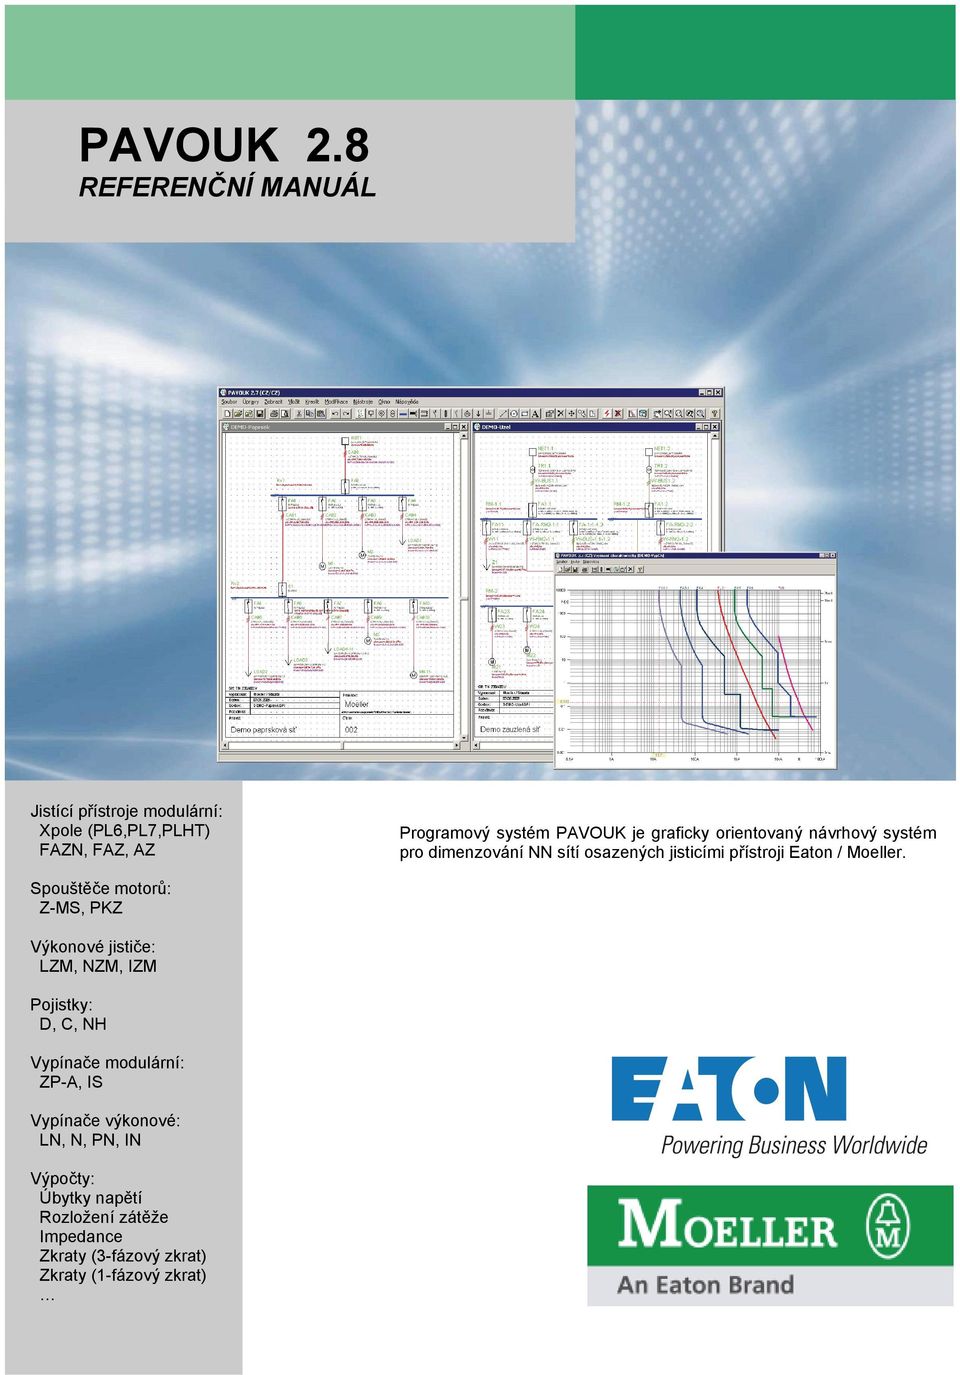 graficky orientovaný návrhový systém pro dimenzování NN sítí osazených jisticími přístroji Eaton / Moeller.